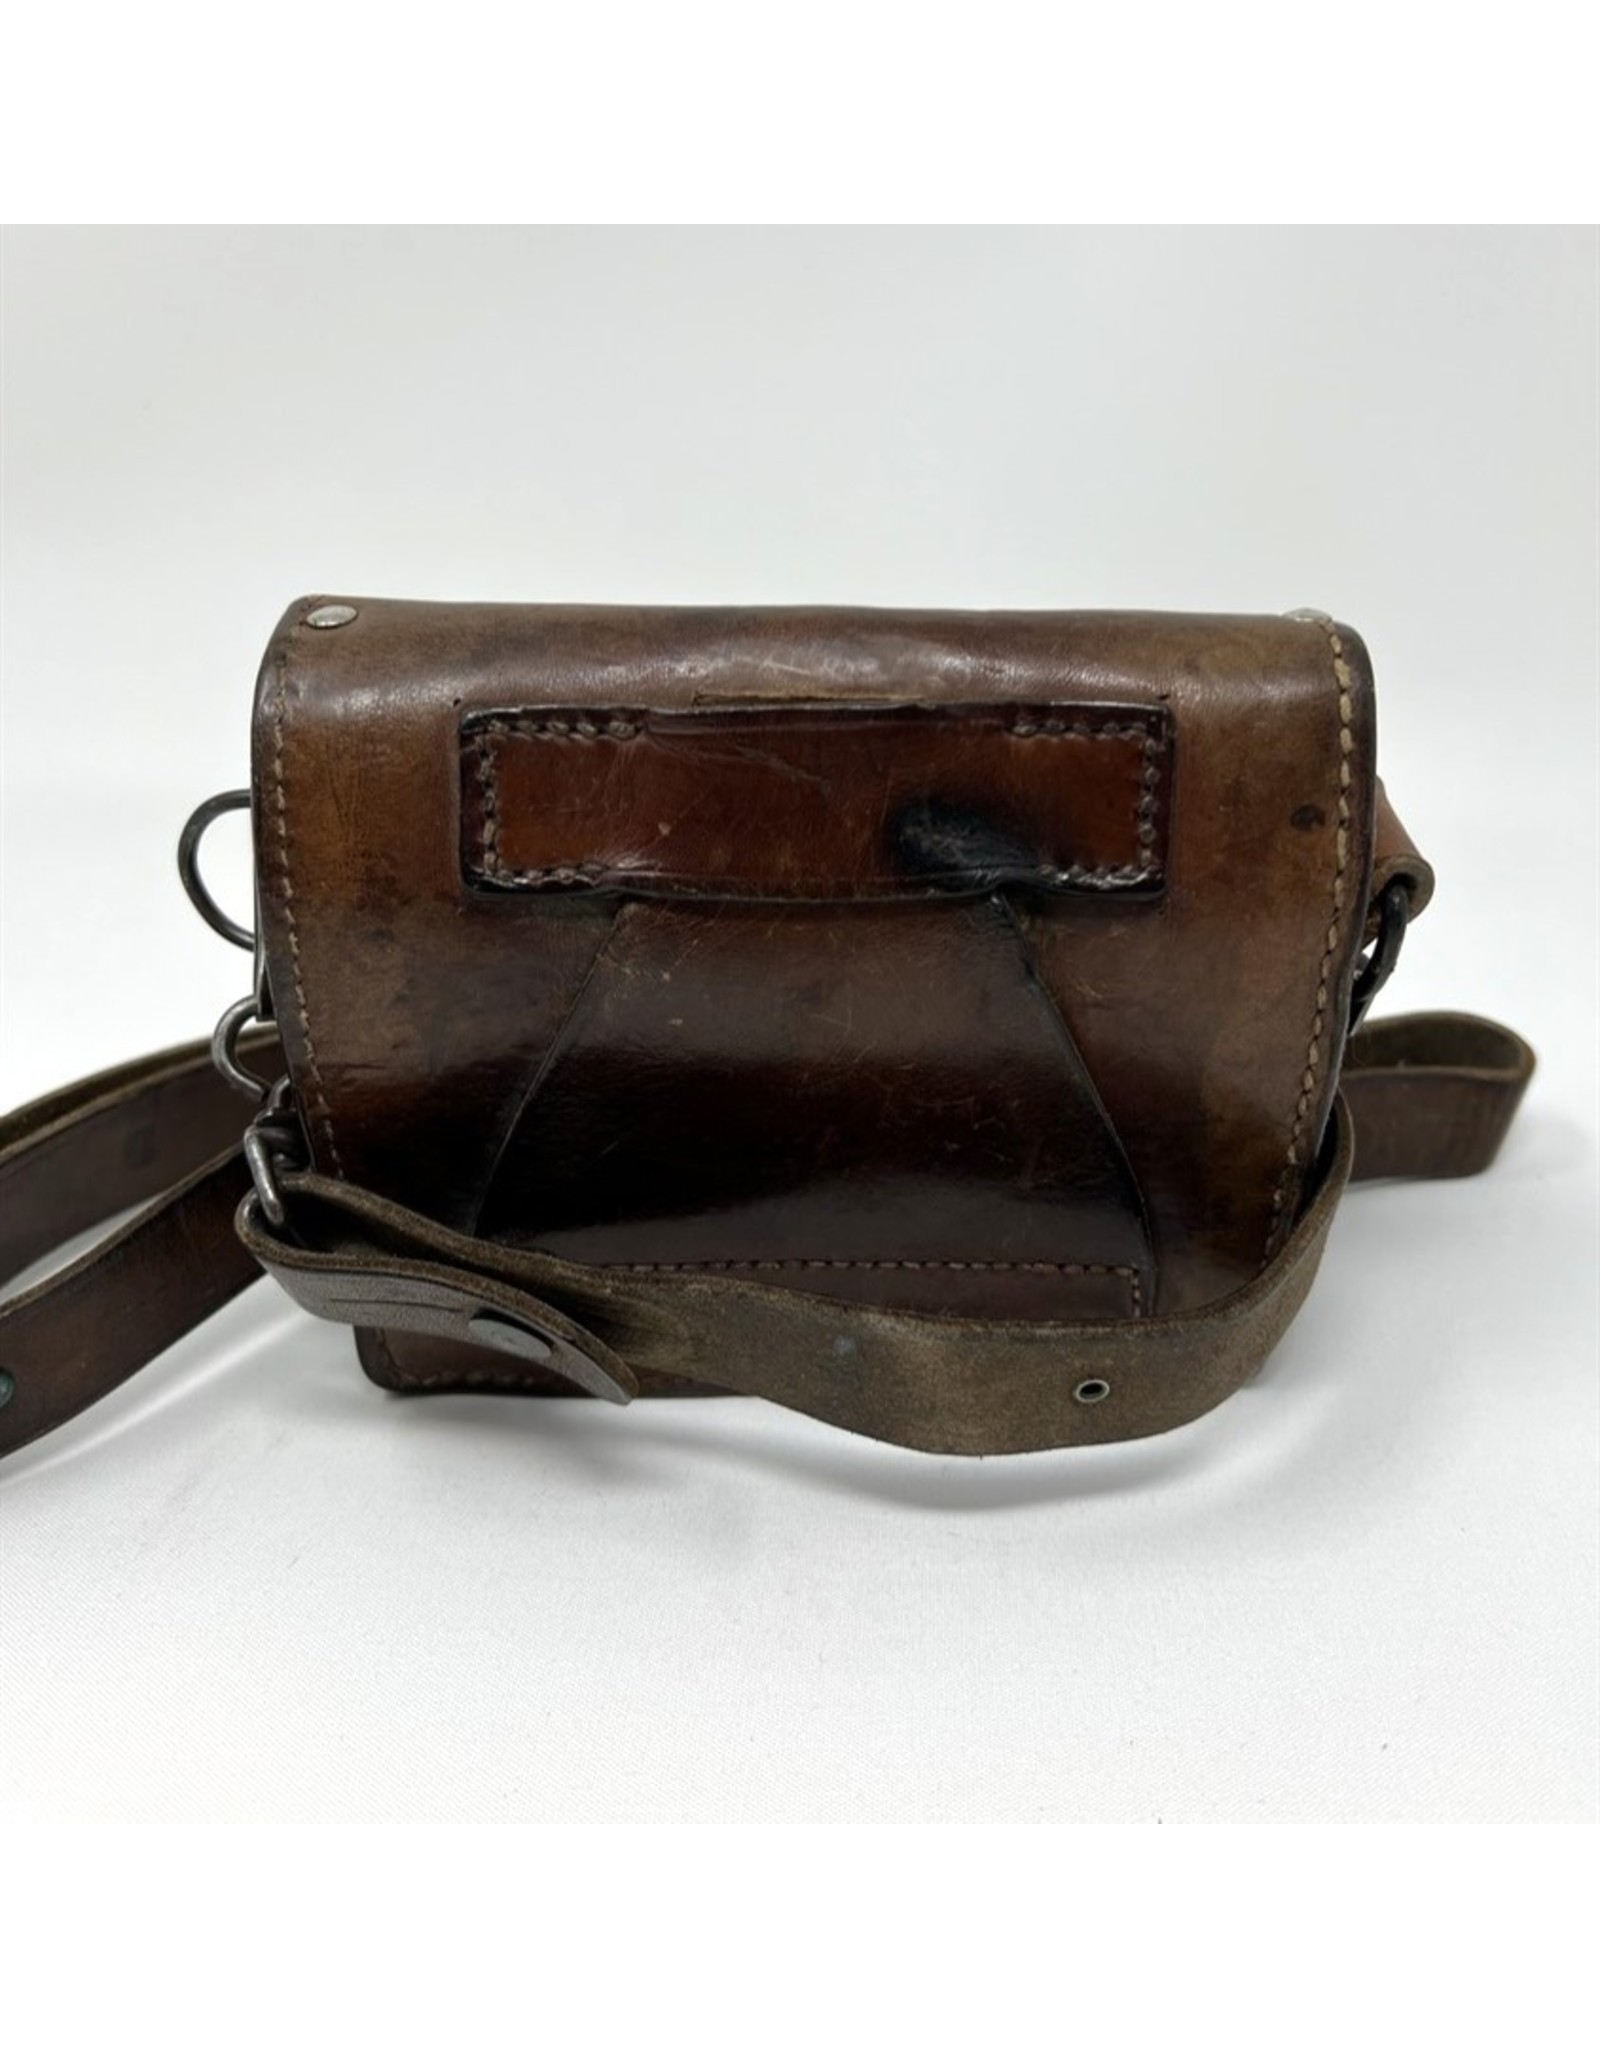 US Civil war ammunition cartridge leather pouch